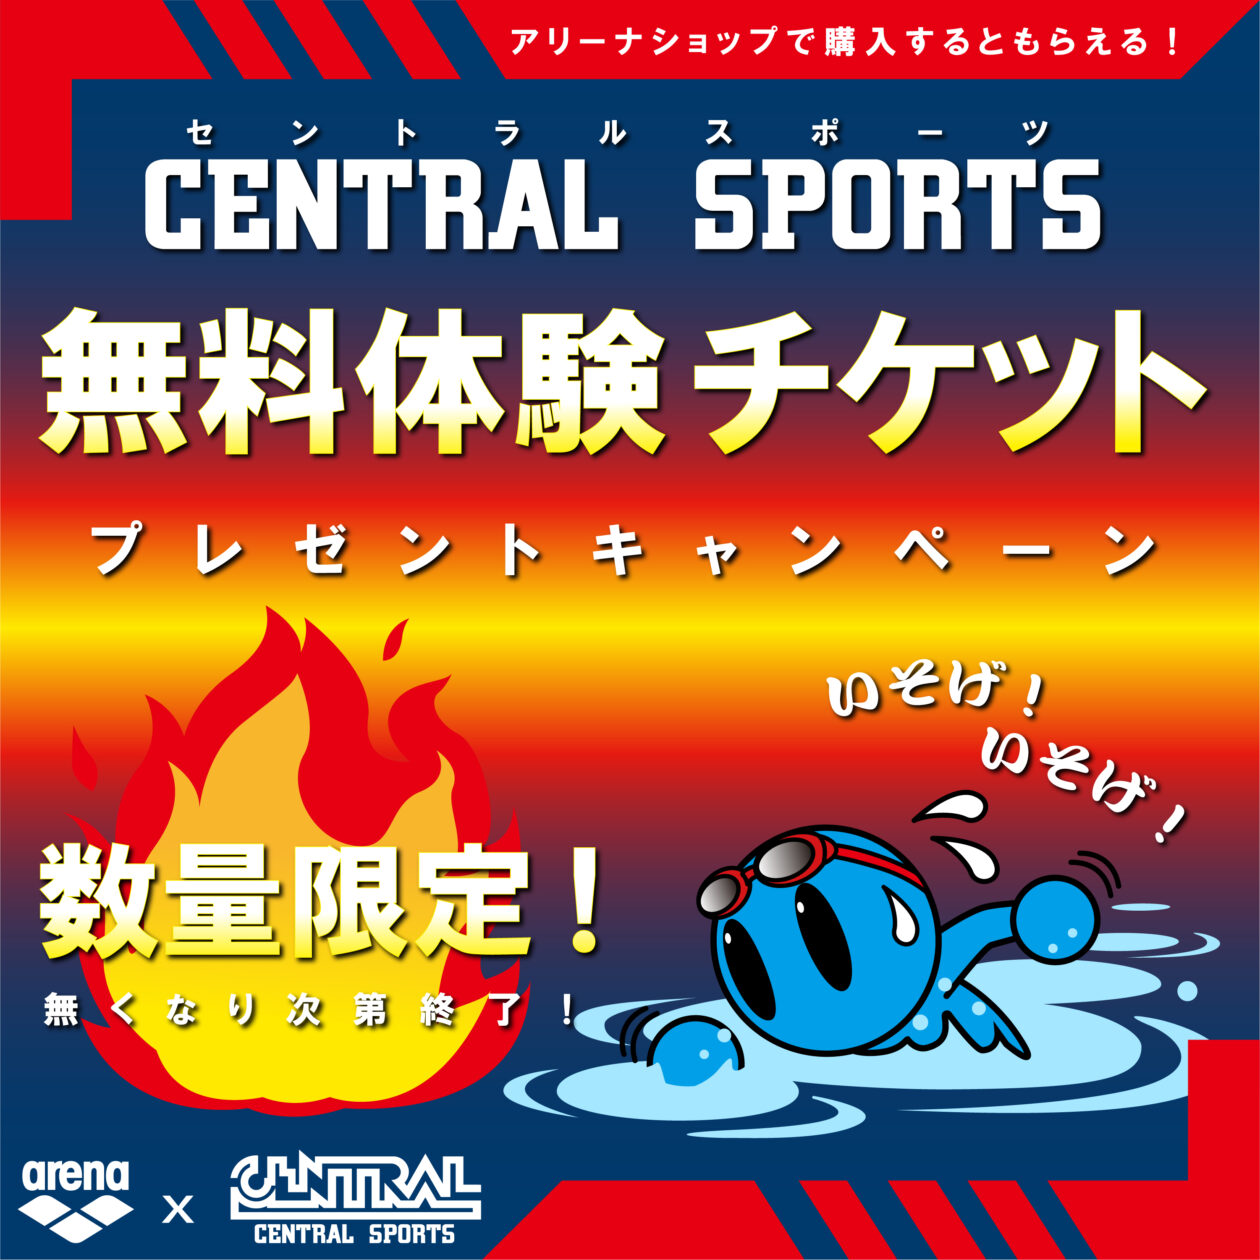 【CENTRAL SPORTS 体験チケットプレゼントキャンペーン】